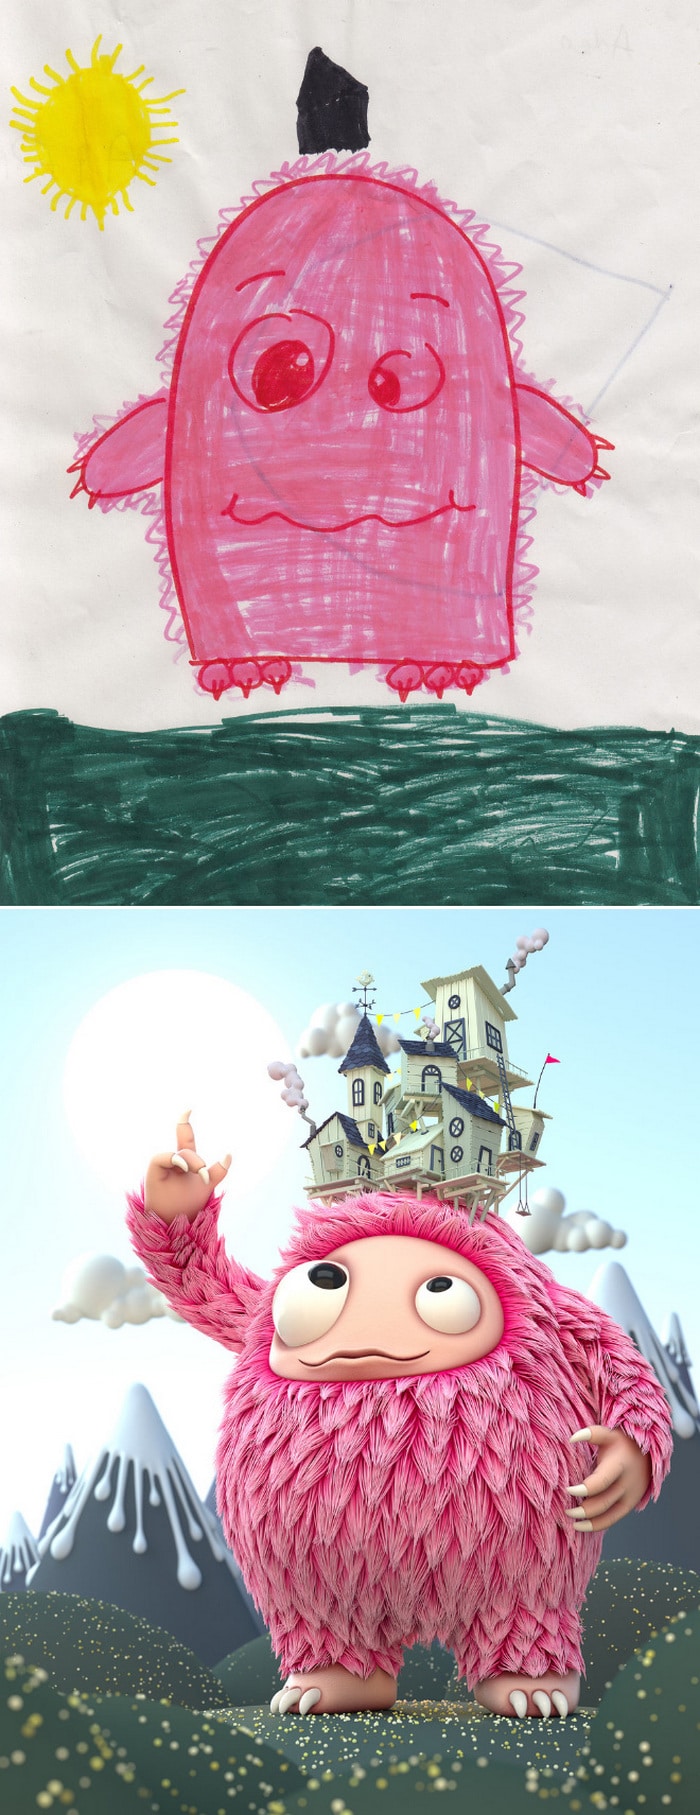 Projeto Monstro - Crianças desenham monstros e artistas recriam com sua arte 3